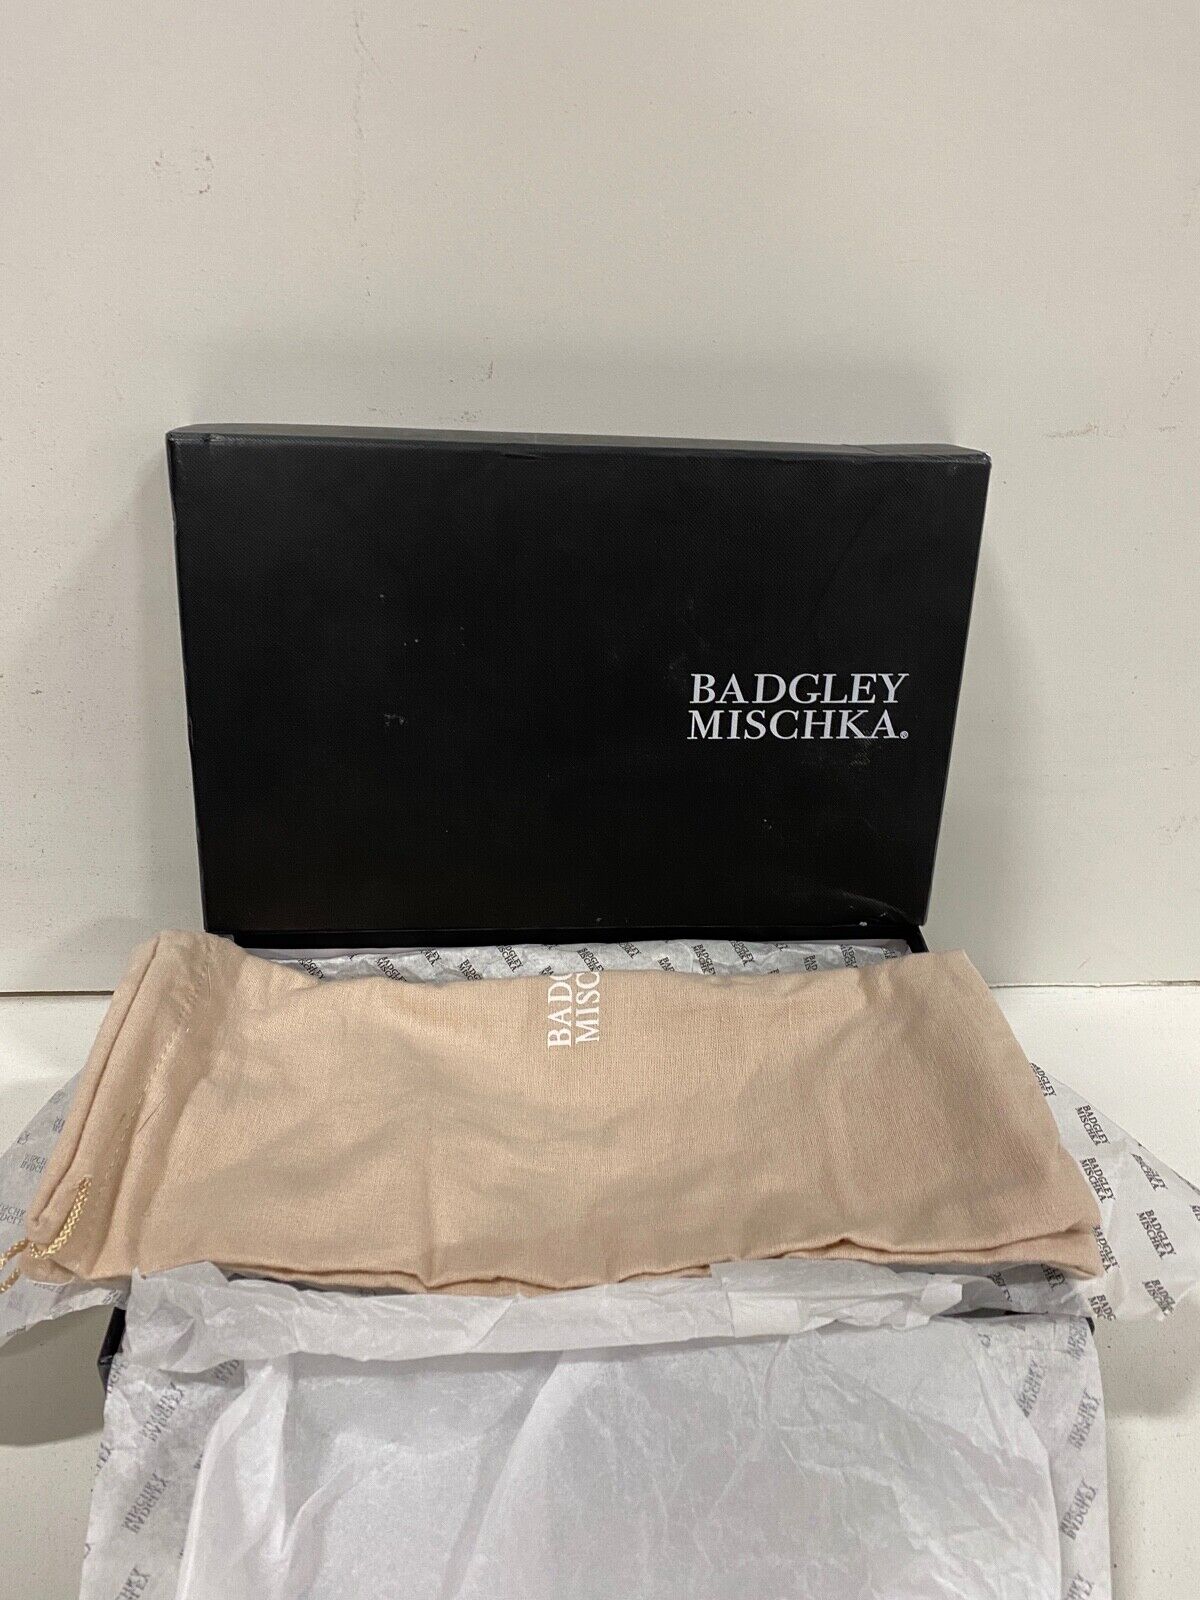 BADGLEY MISCHKA MP4629 FINESSE IVRSAT Size 8.5 Women